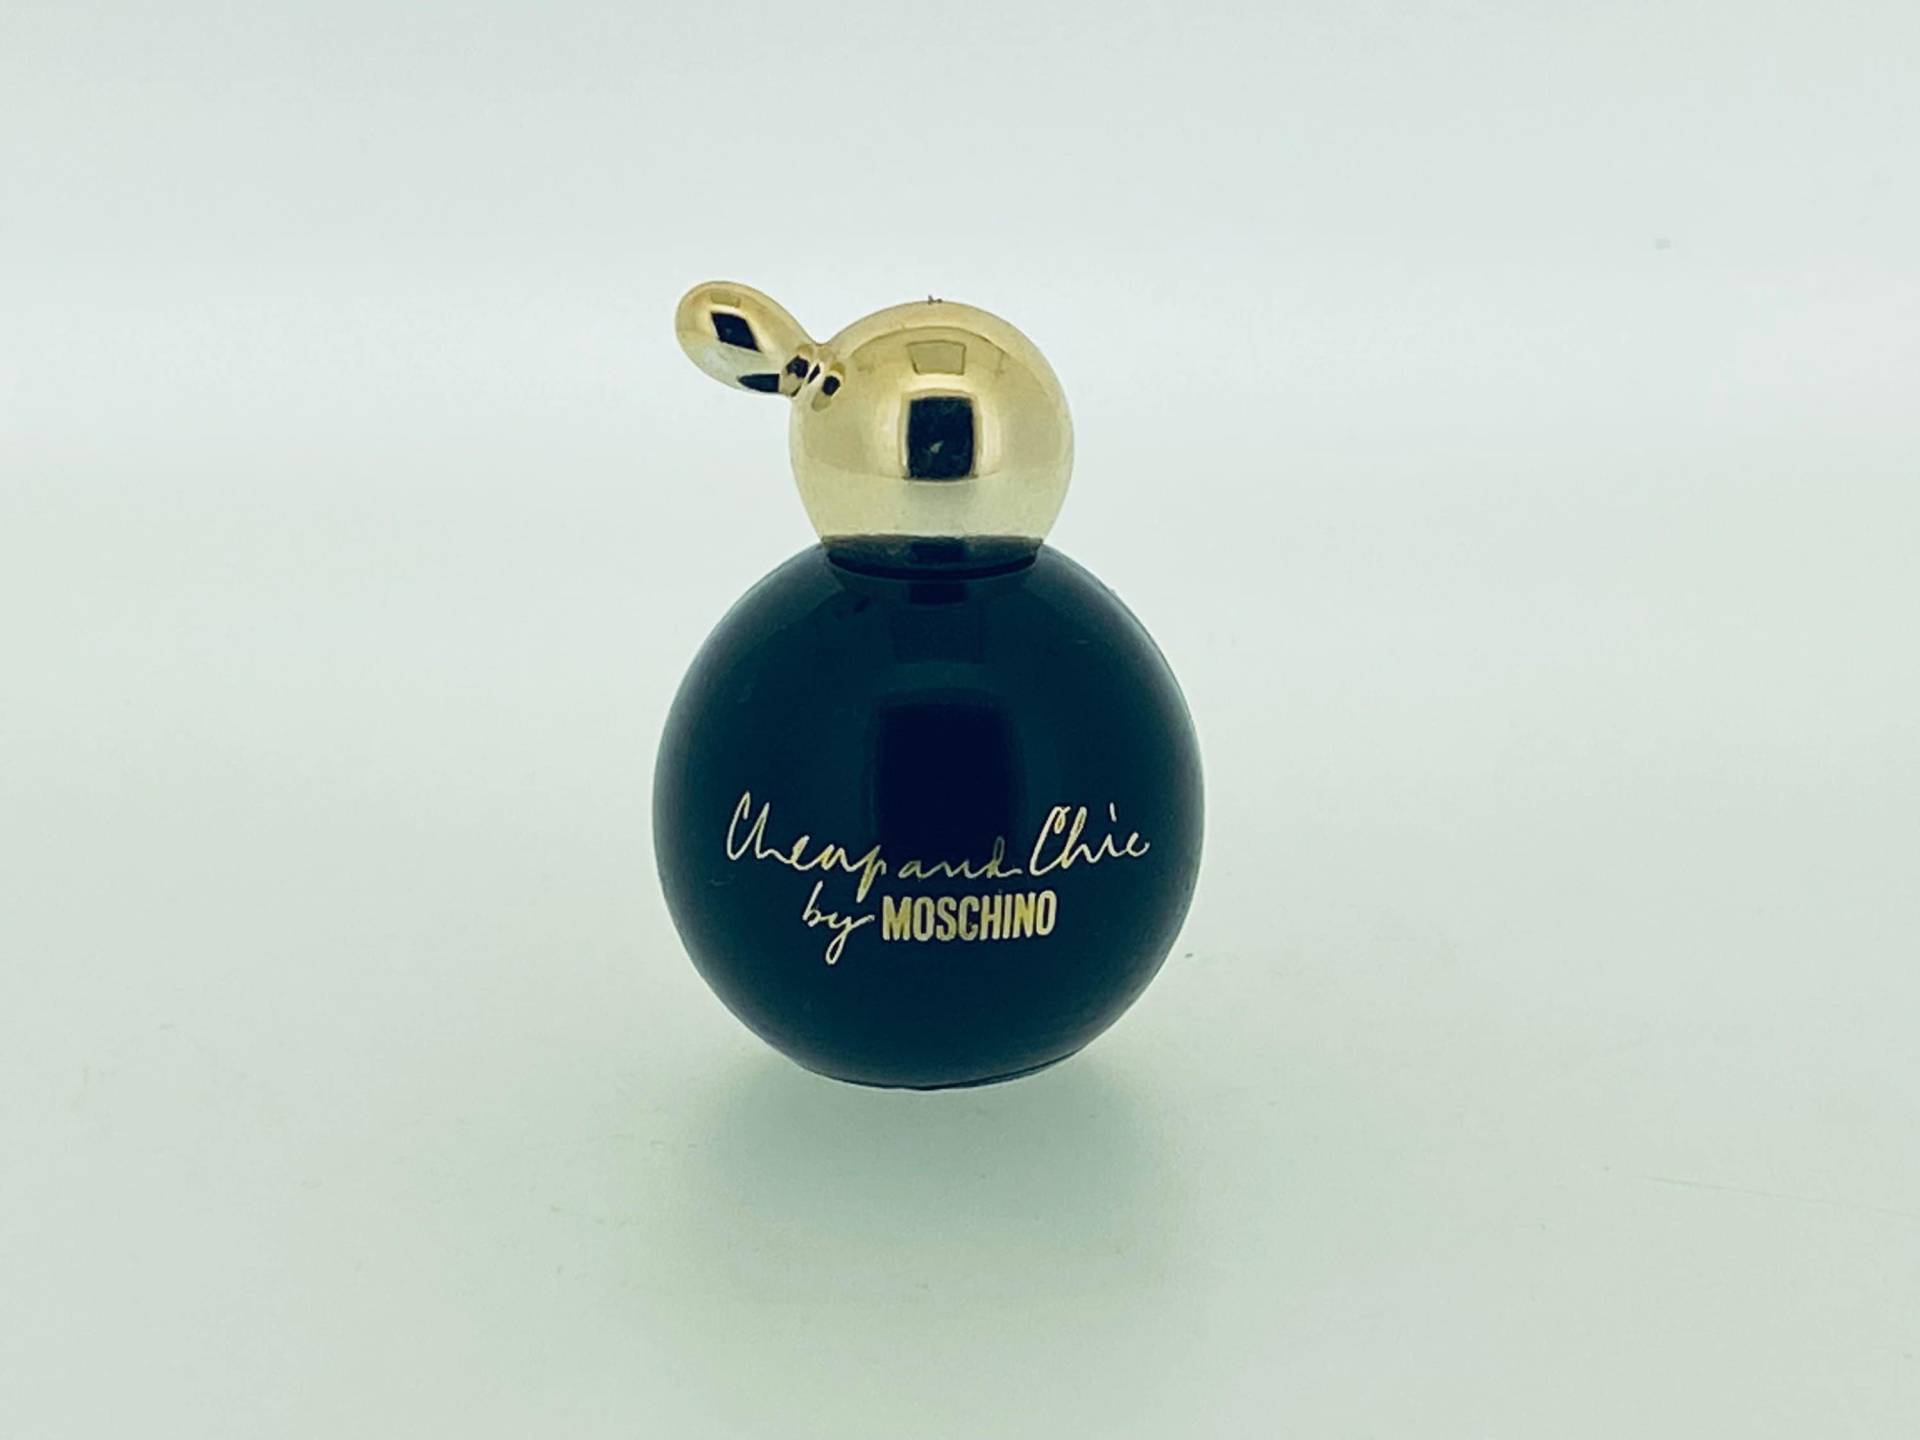 Günstig Und Chic Moschino 1995 Eau De Toilette Miniatur 5 Ml von Etsy - VintagePerfumeShop